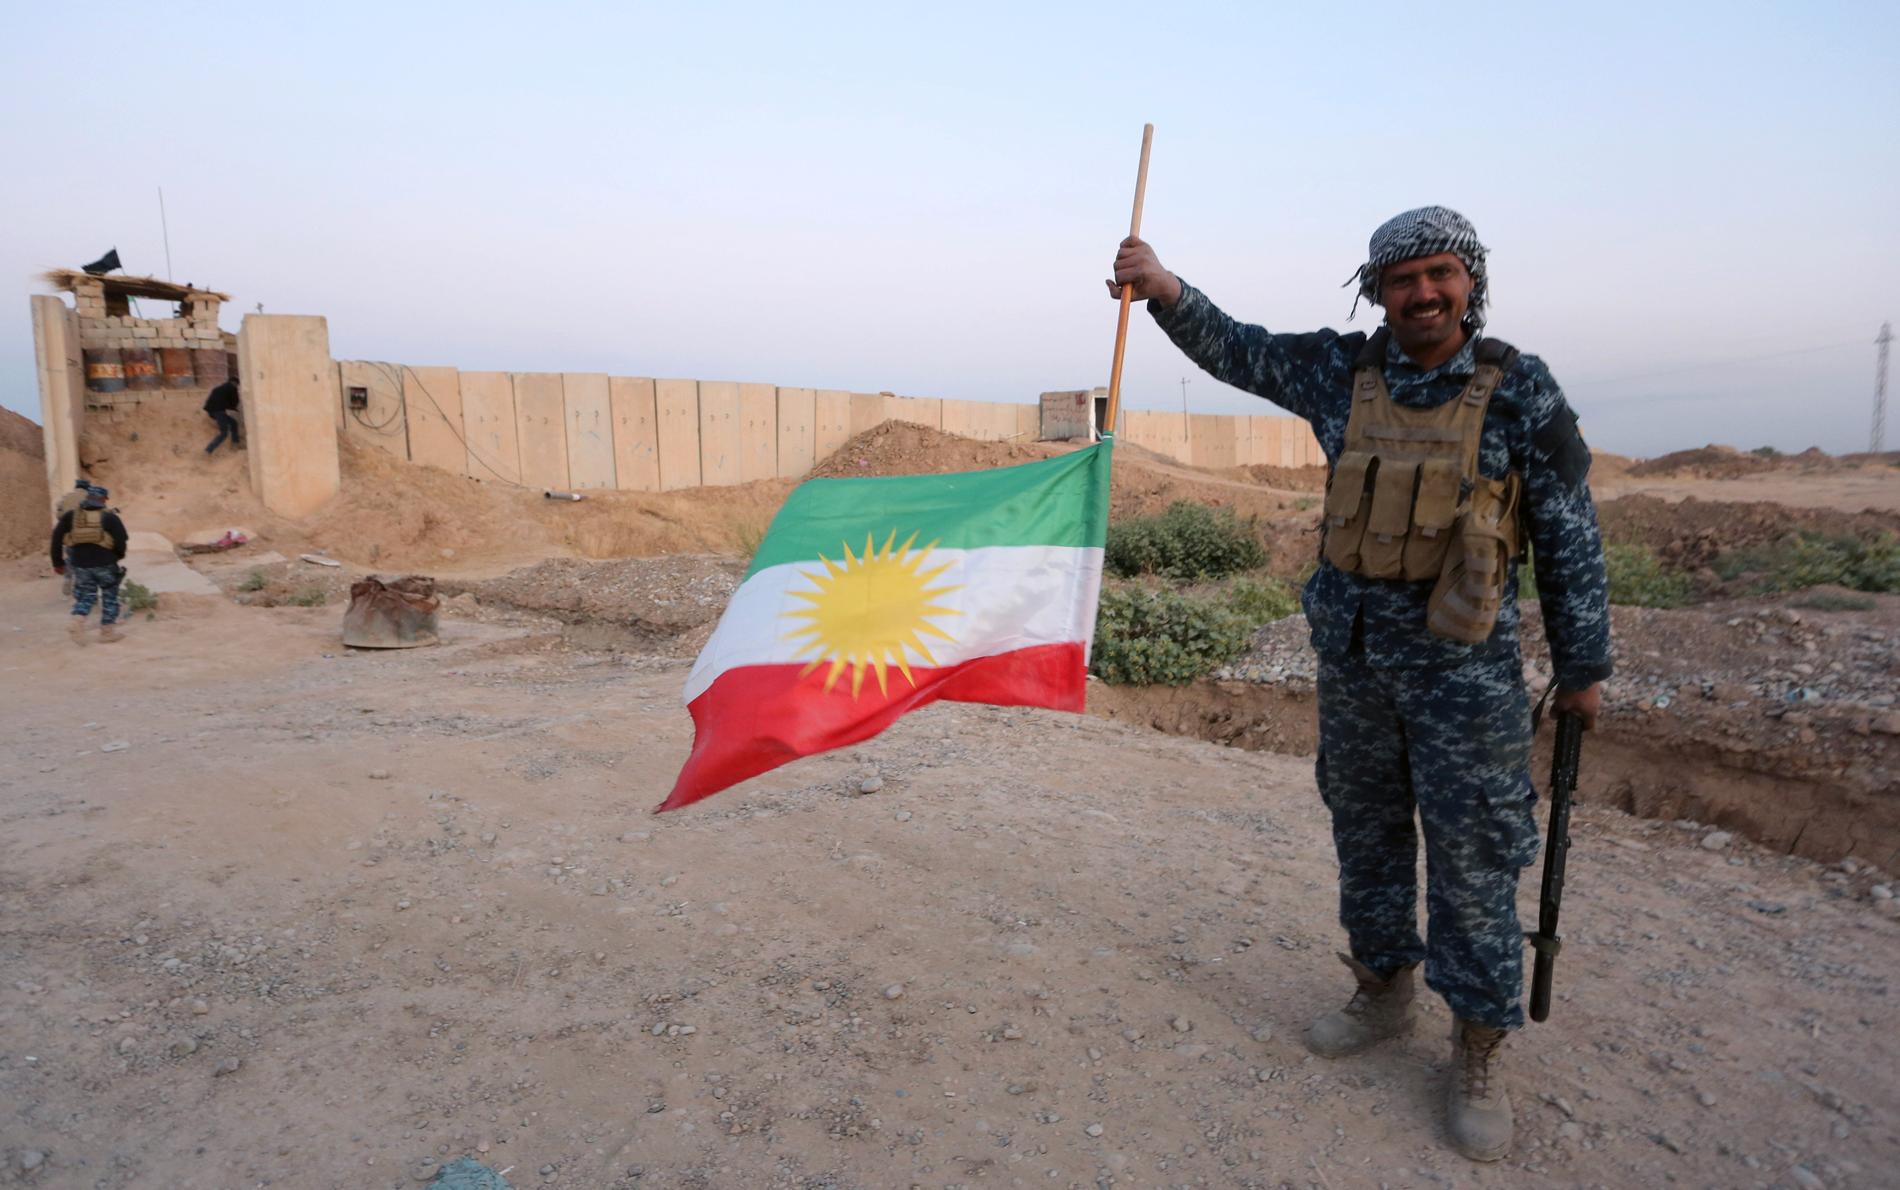 En irakisk soldat håller en upp-och-nedvänd flagga.